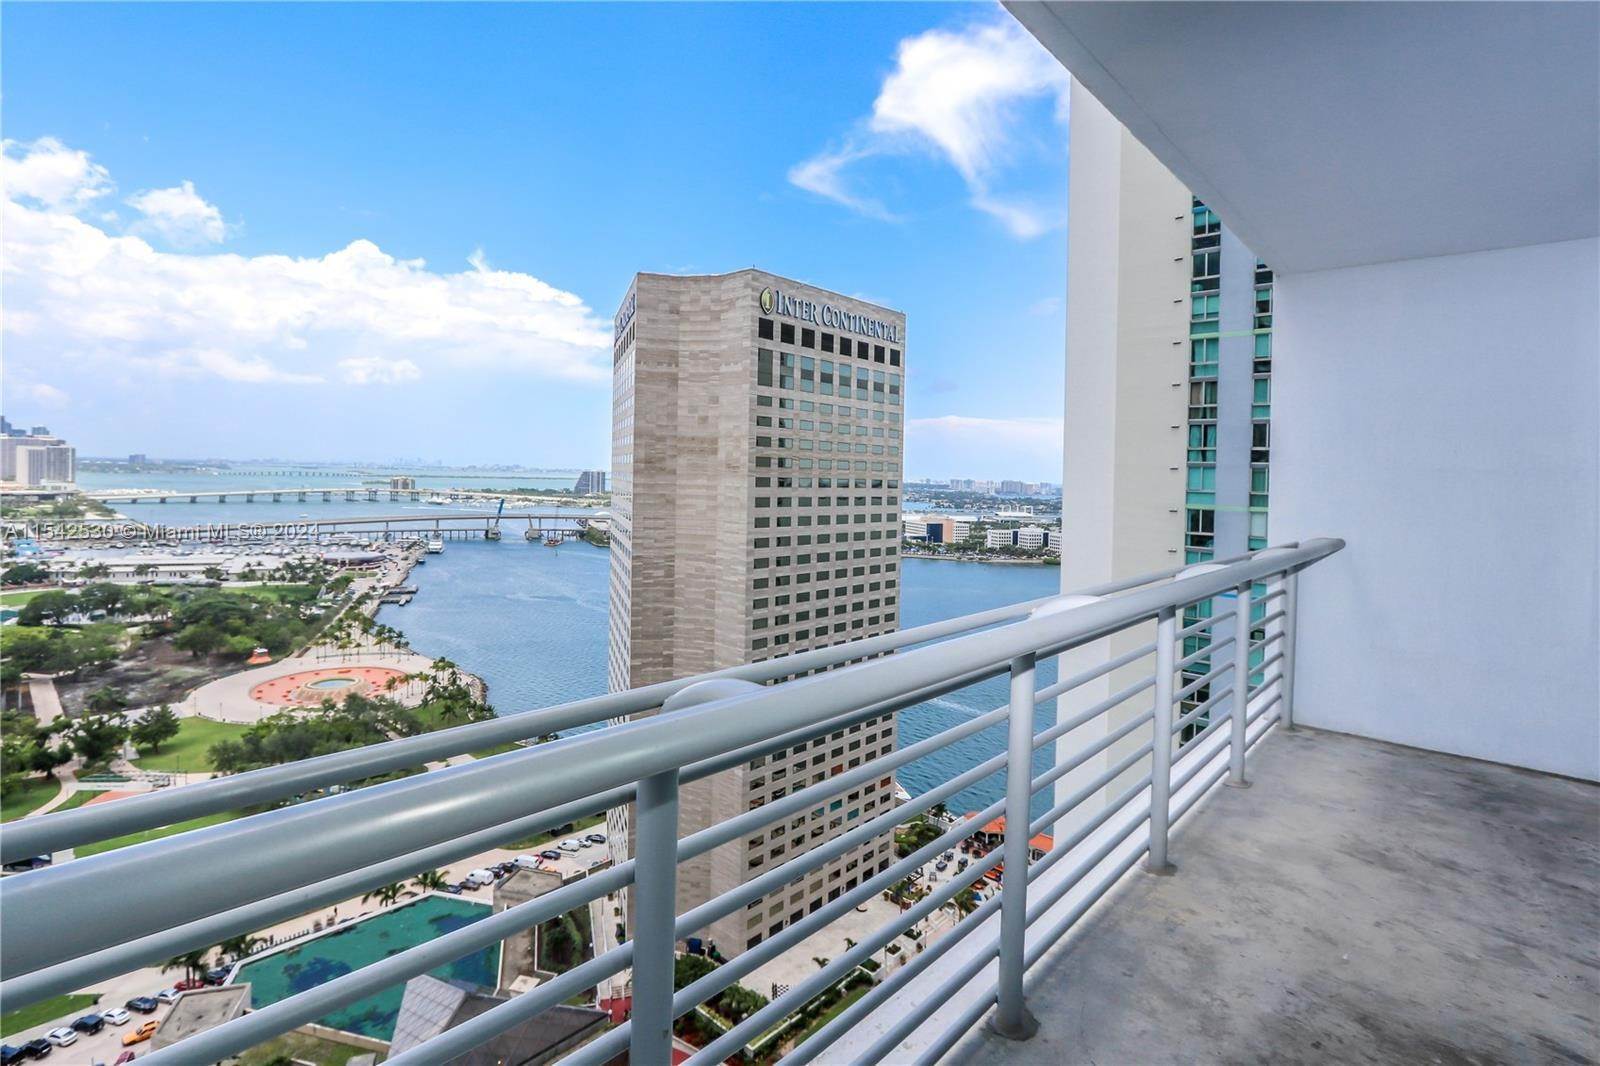 Condominium at Downtown Miami, Miami, FL 33131